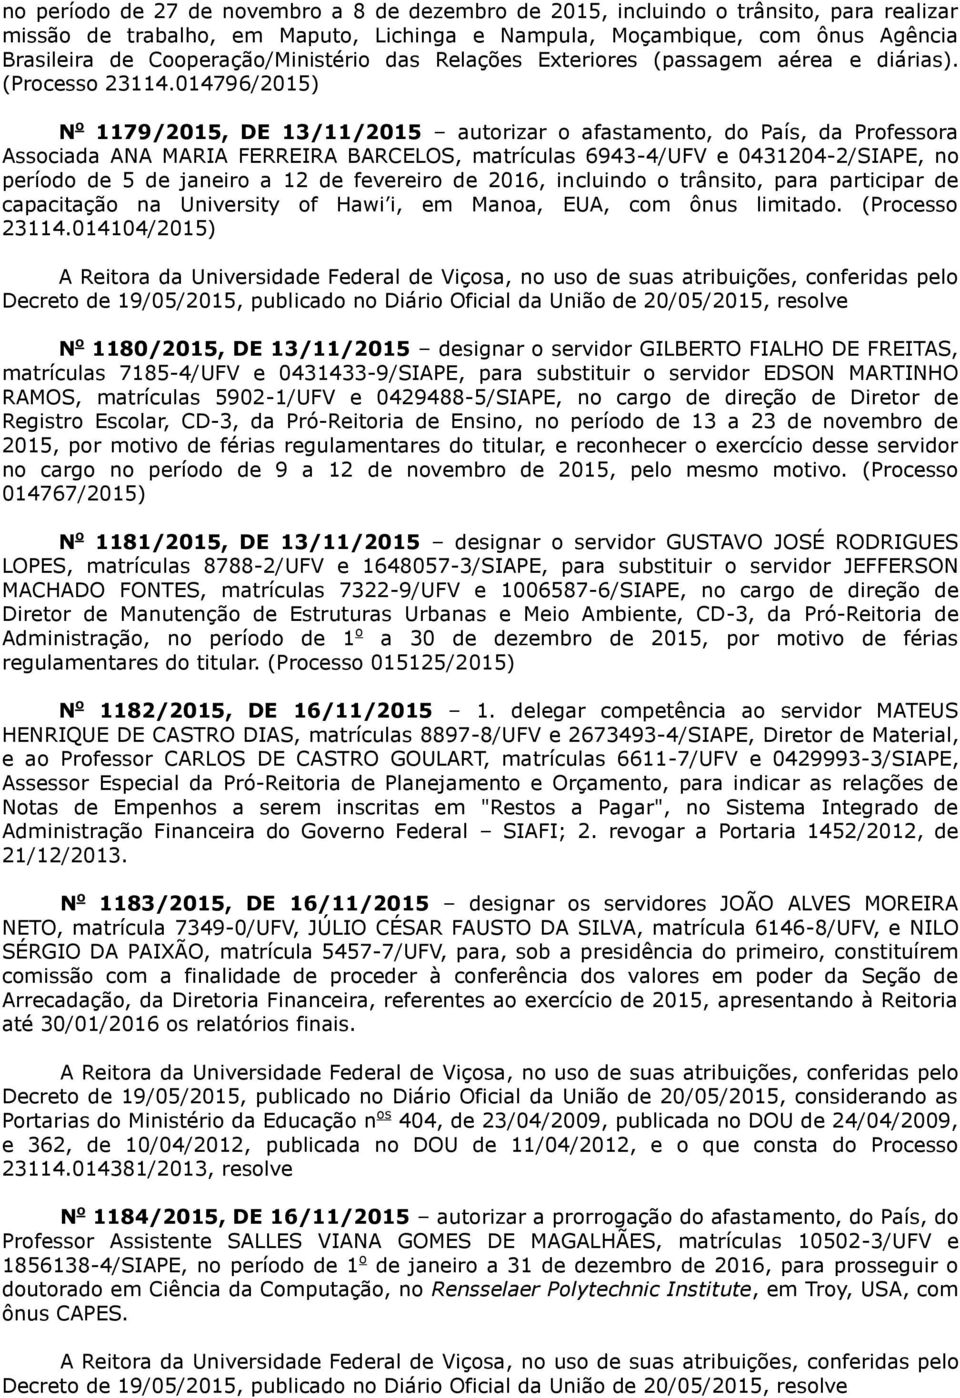 014796/2015) 1179/2015, DE 13/11/2015 autorizar o afastamento, do País, da Professora Associada ANA MARIA FERREIRA BARCELOS, matrículas 6943-4/UFV e 0431204-2/SIAPE, no período de 5 de janeiro a 12